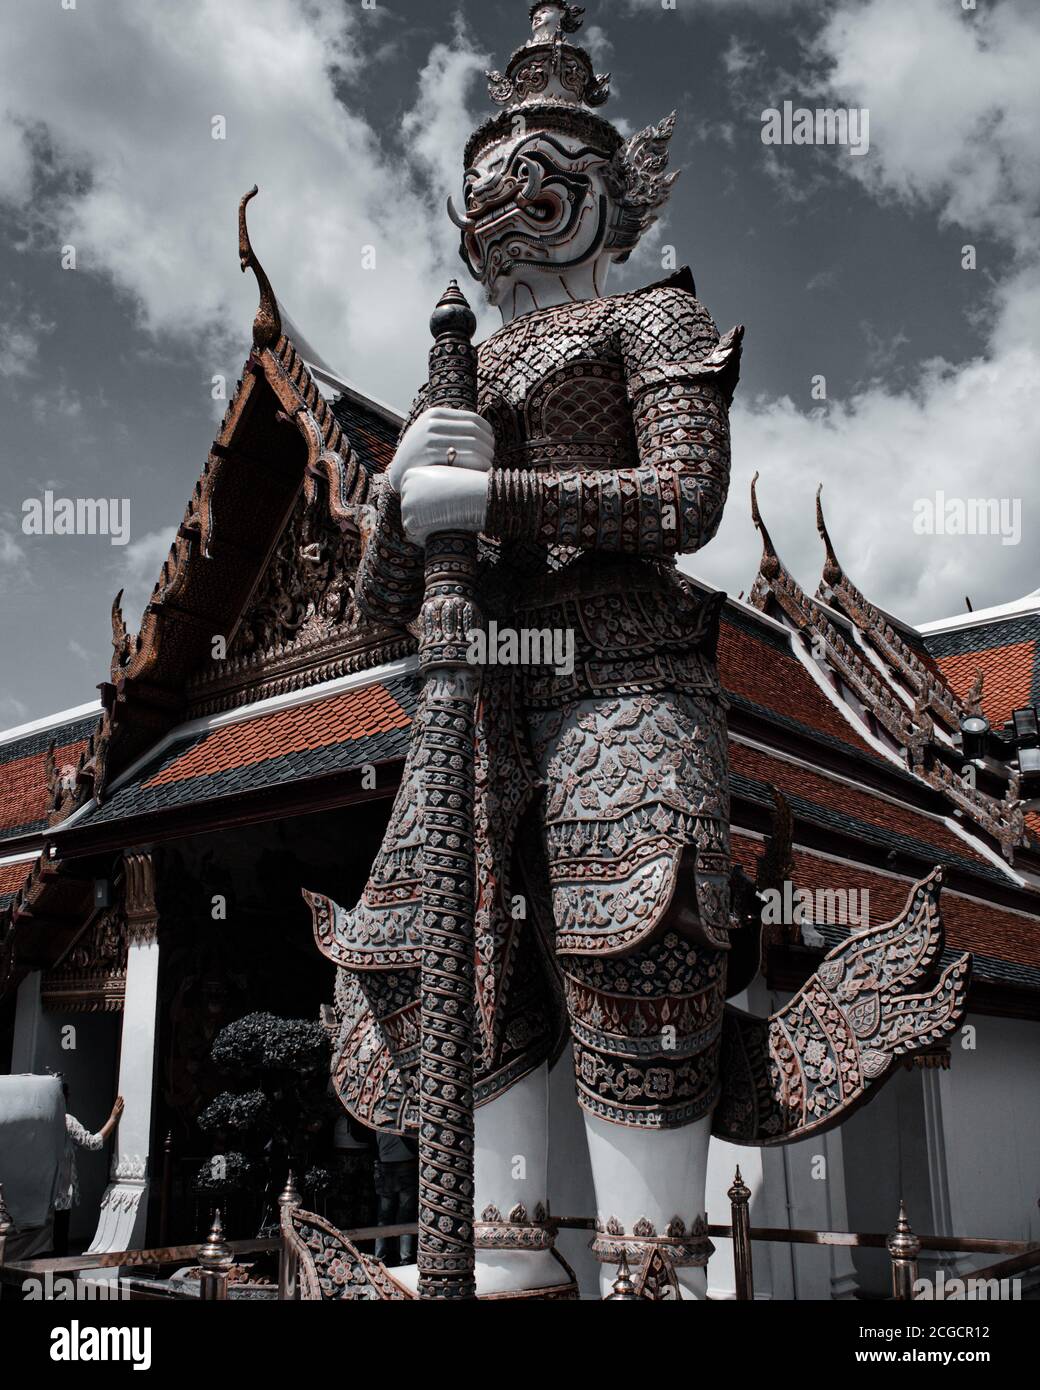 Klassisches Thailand wat arun Grand Palace bangkok asiatische Kultur Yak yak Statue wunderschön Wolken Hintergrund Tageslicht Tag Reise Urlaub heiß Wetter Stockfoto